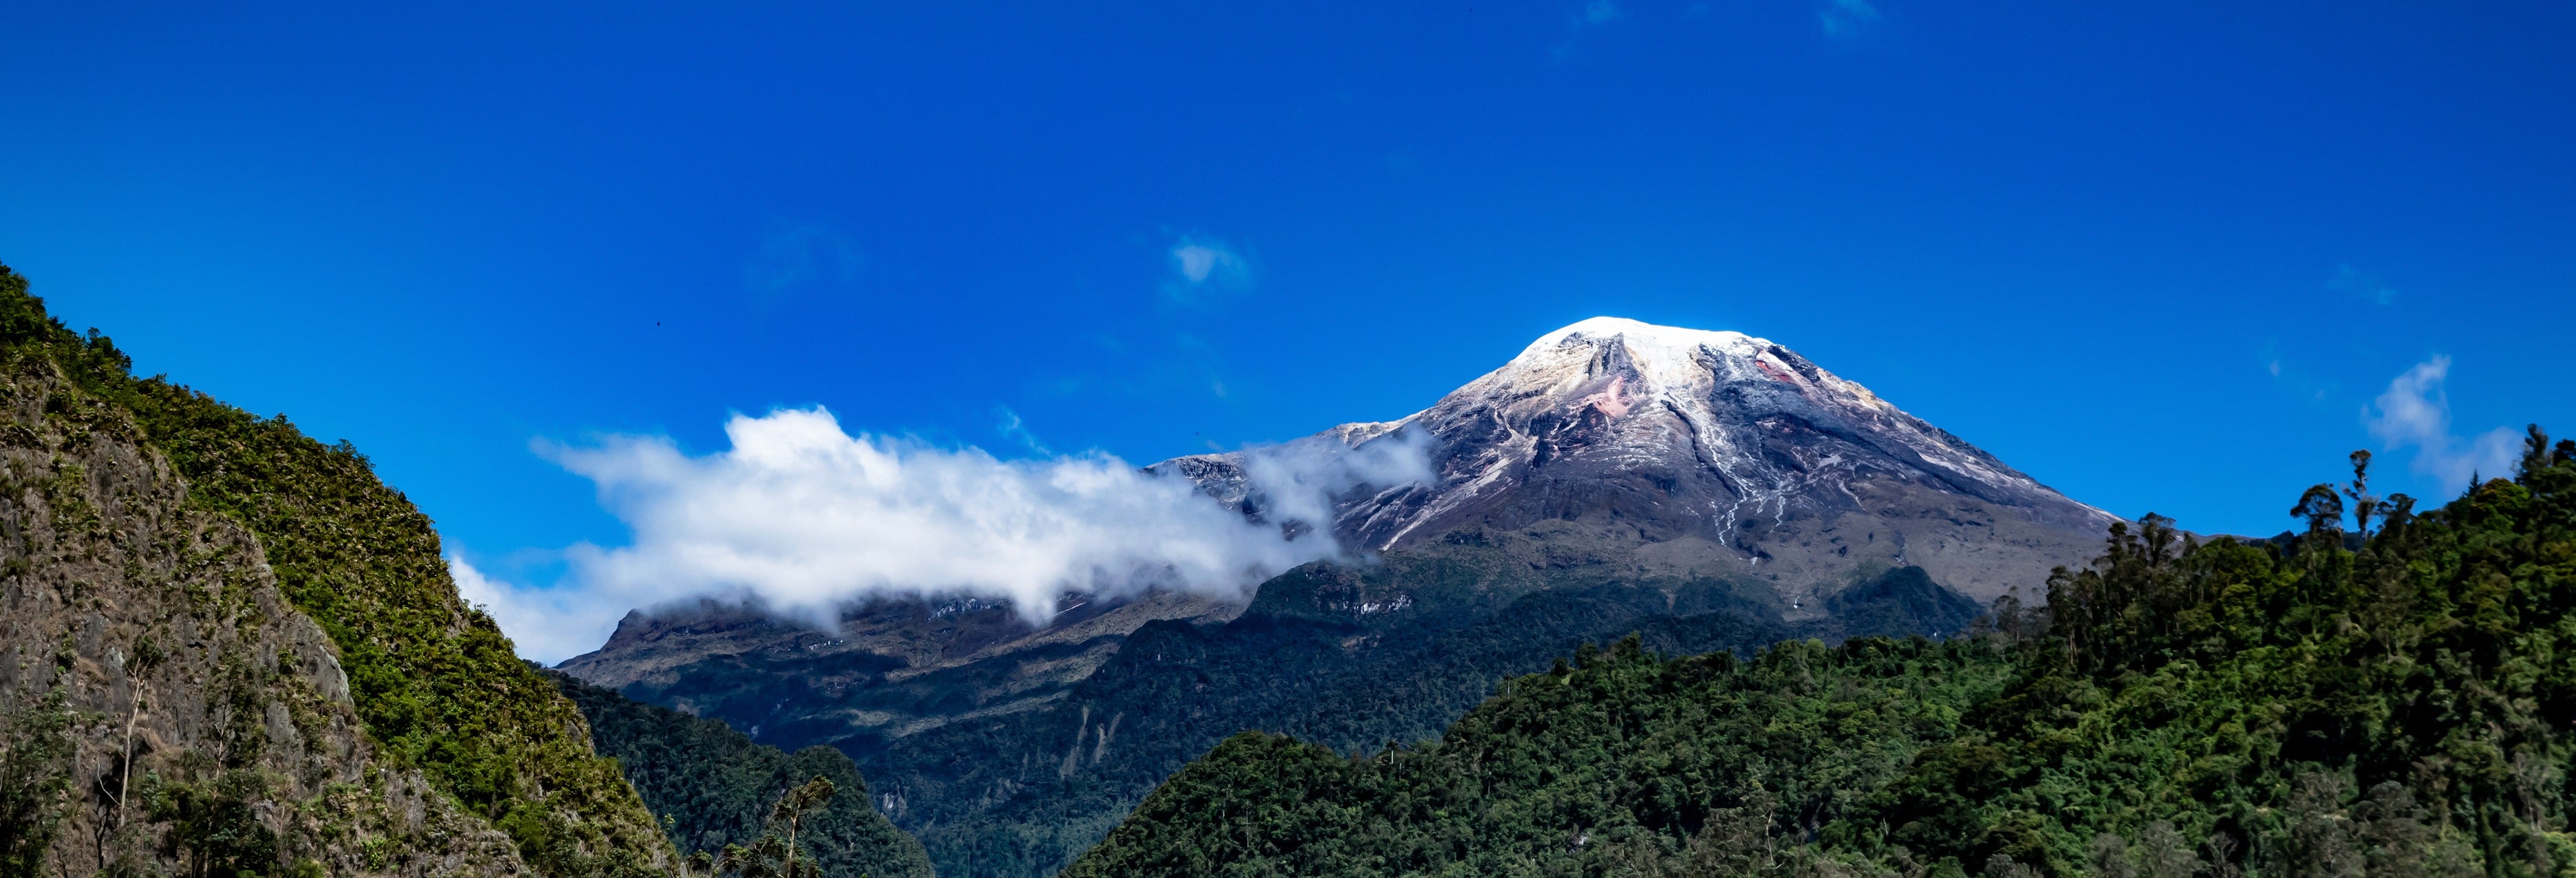 Ruta privada de trekking de 4 días por el Nevado del Tolima desde Ibagué